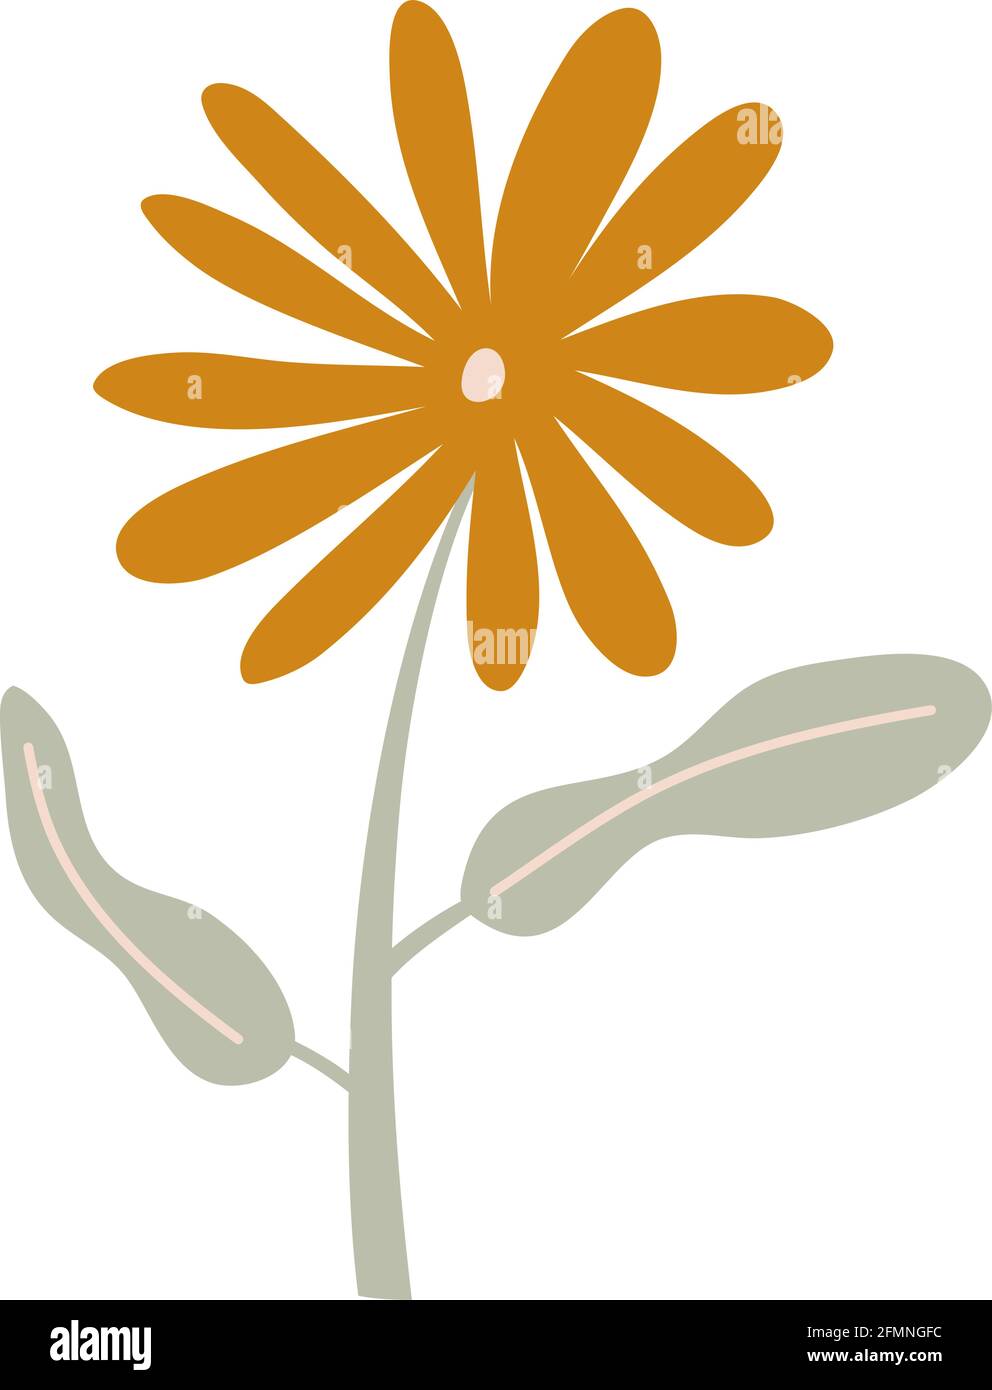 Fiore di primavera stilizzato vettoriale. Elemento grafico dell'illustrazione scandinava. Decorativo estate floreale immagine per il saluto Valentine card o poster, vacanza Illustrazione Vettoriale